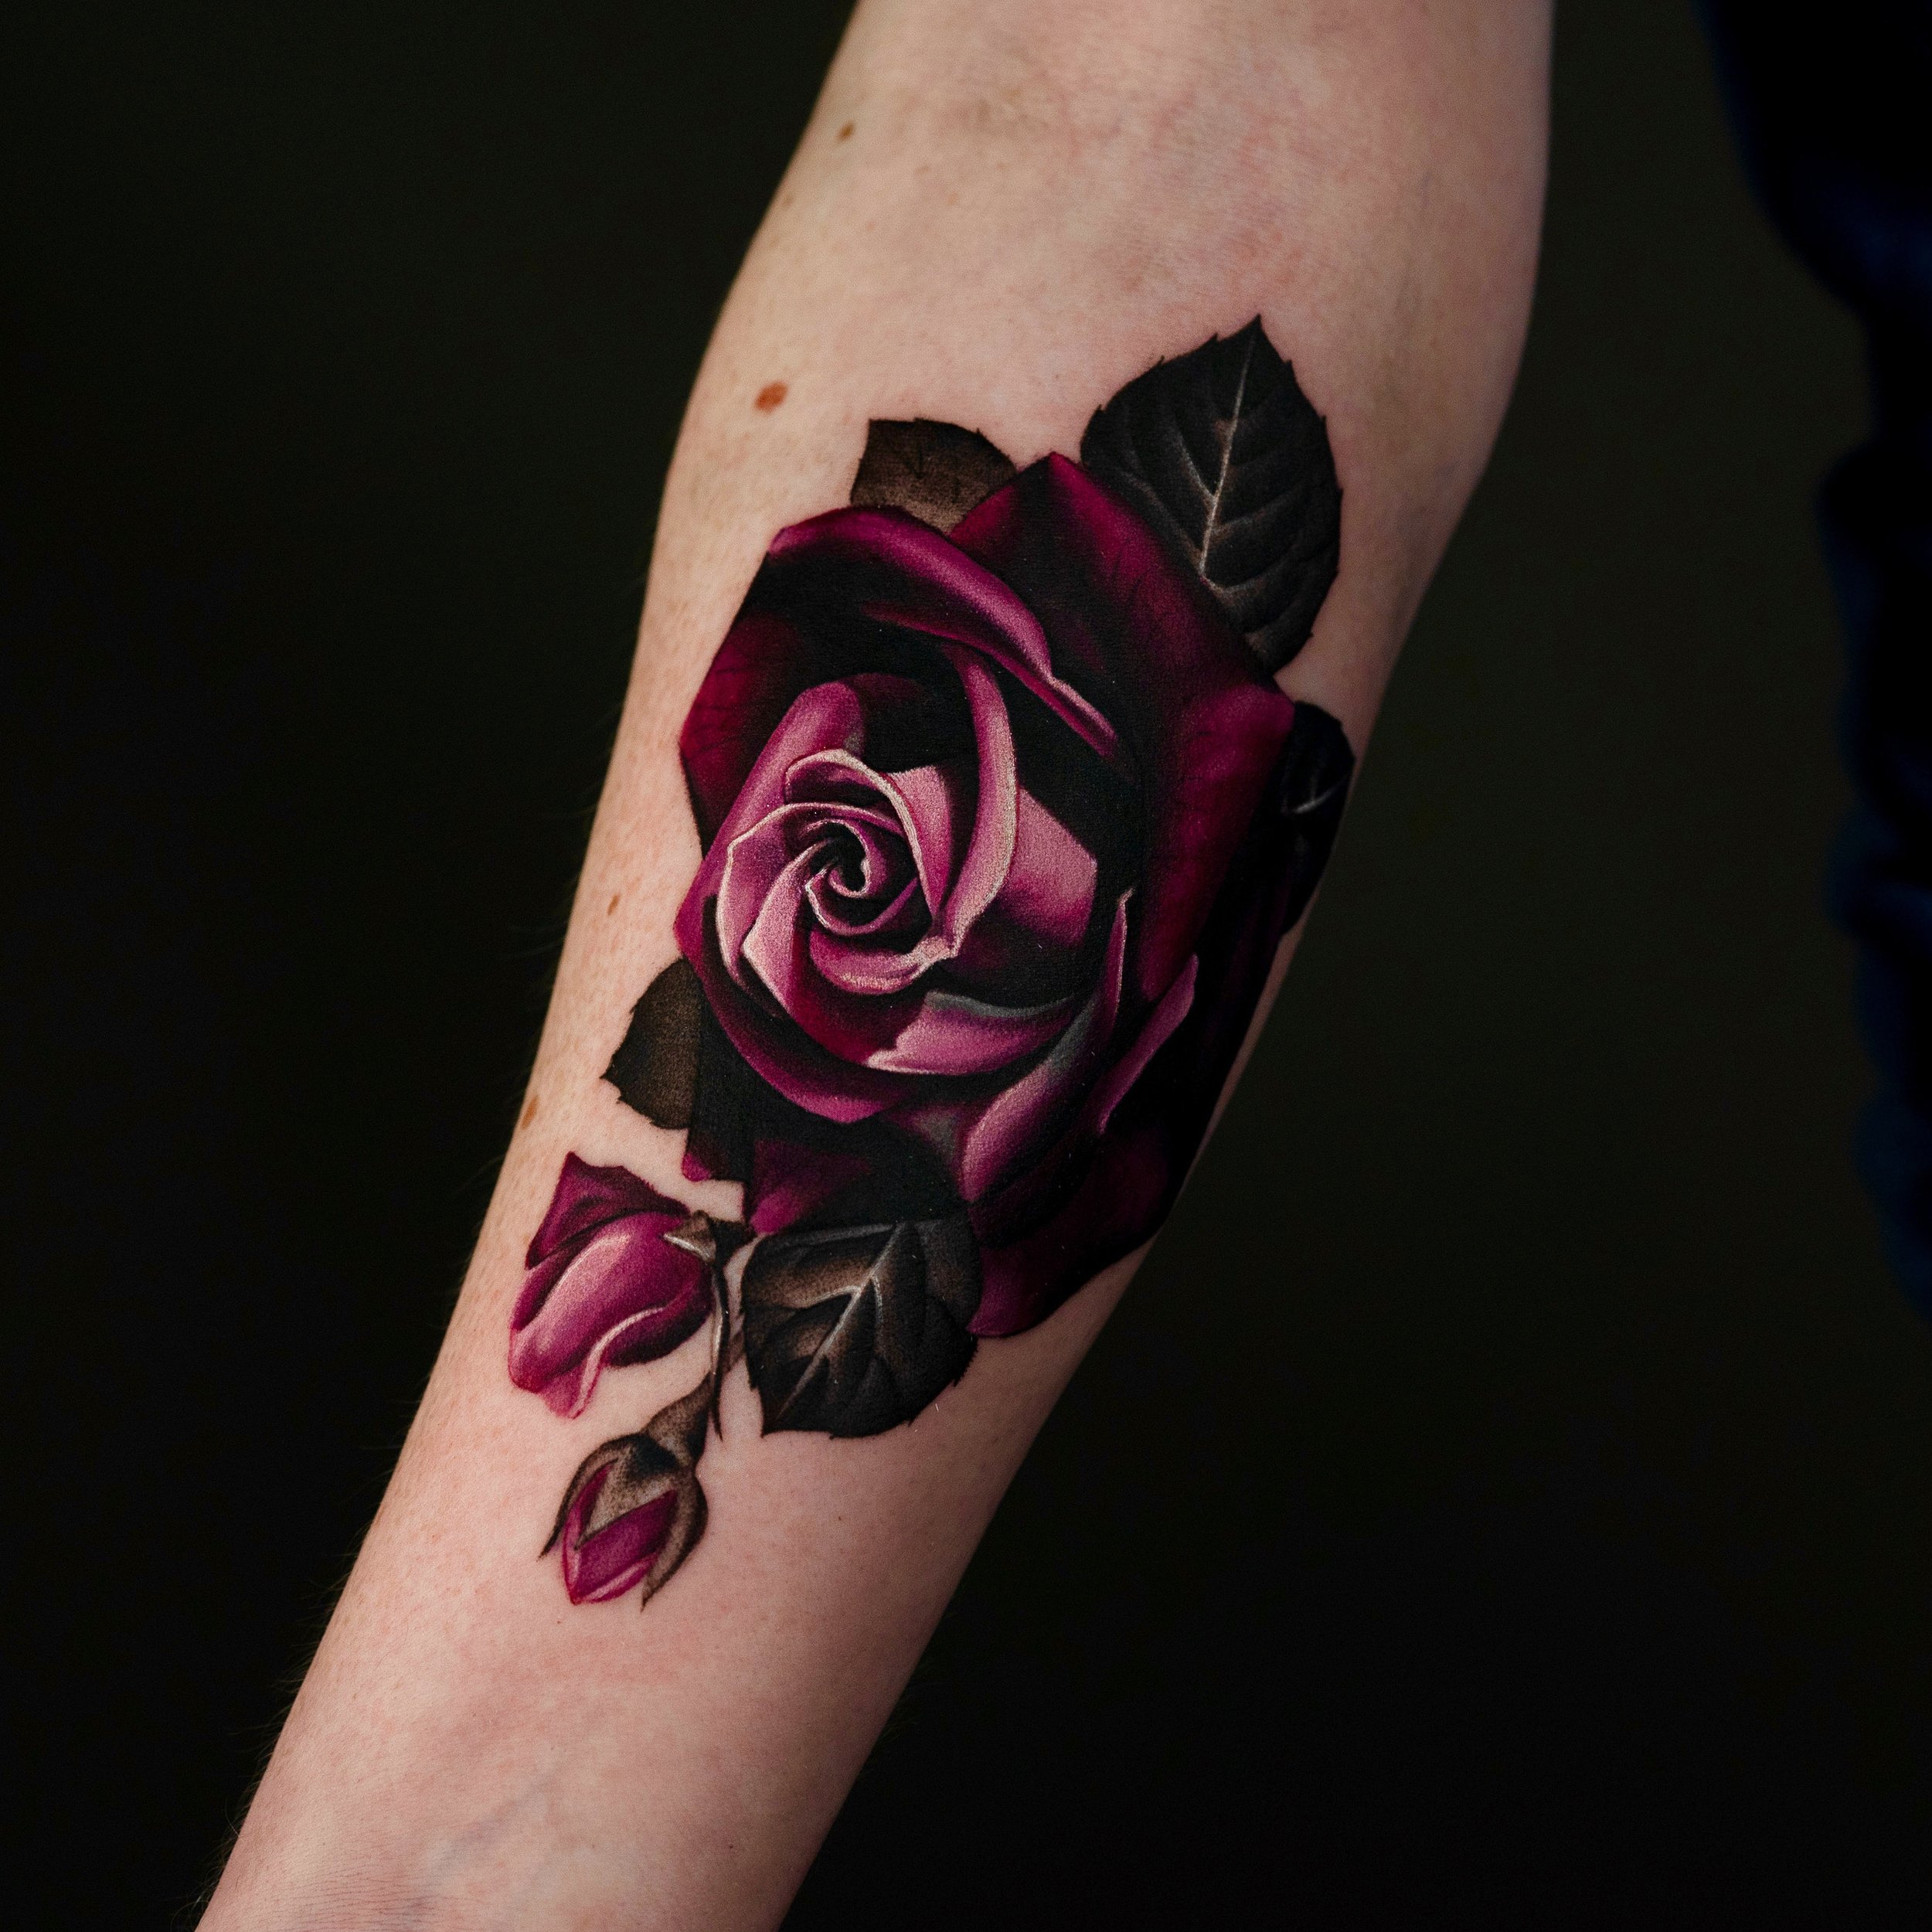 Monique Elizabeth — Fusion Tattoo Ink